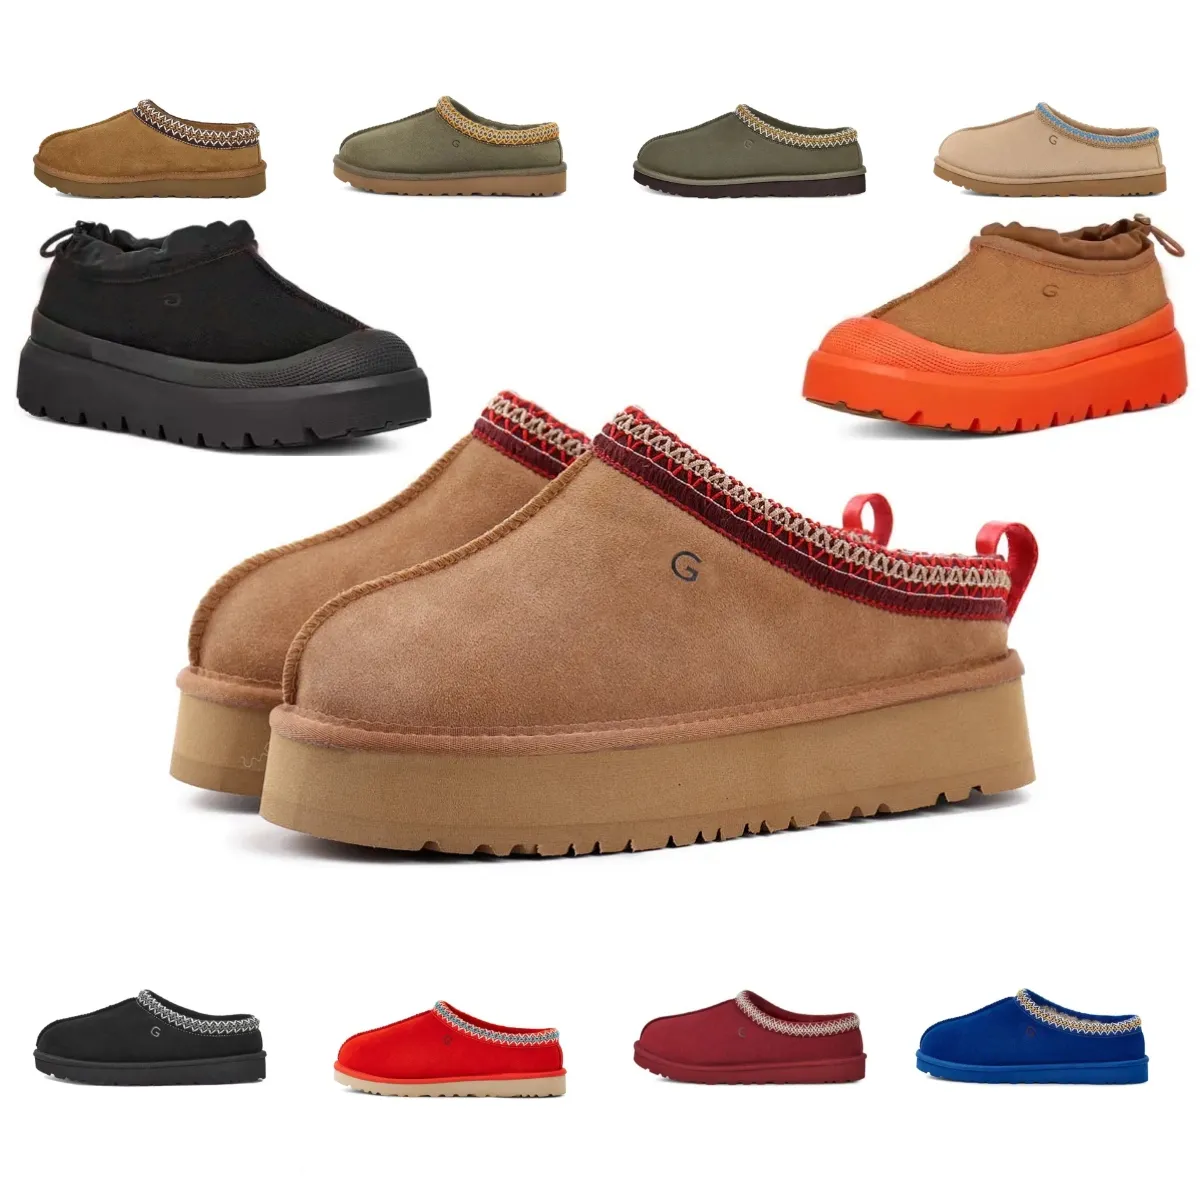 дизайнерские ботинки Tasman, женские австралийские ботинки для женщин, зимние короткие лодыжки, каштановый, темно-синий, антилоповый, коричневый, розовый, бежевый, угги, классические, согревающие, модные кроссовки для девочек777